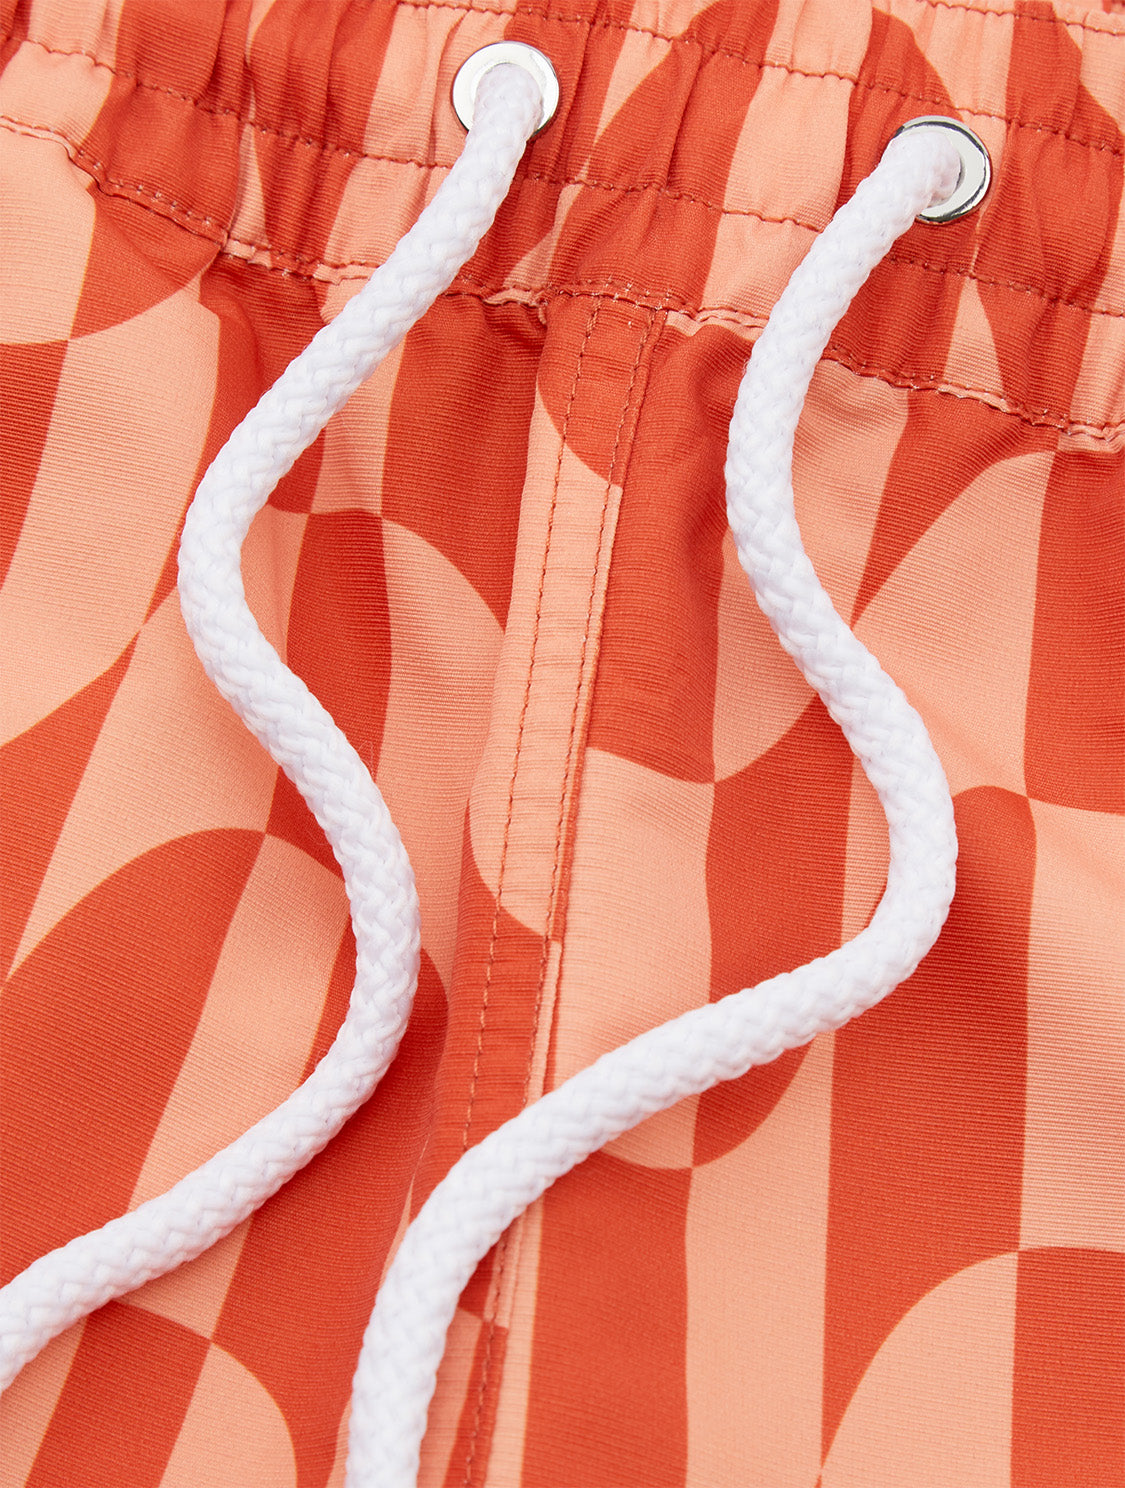 Louis Vuitton Cotton Jacquard Crewneck Orange. Size M0